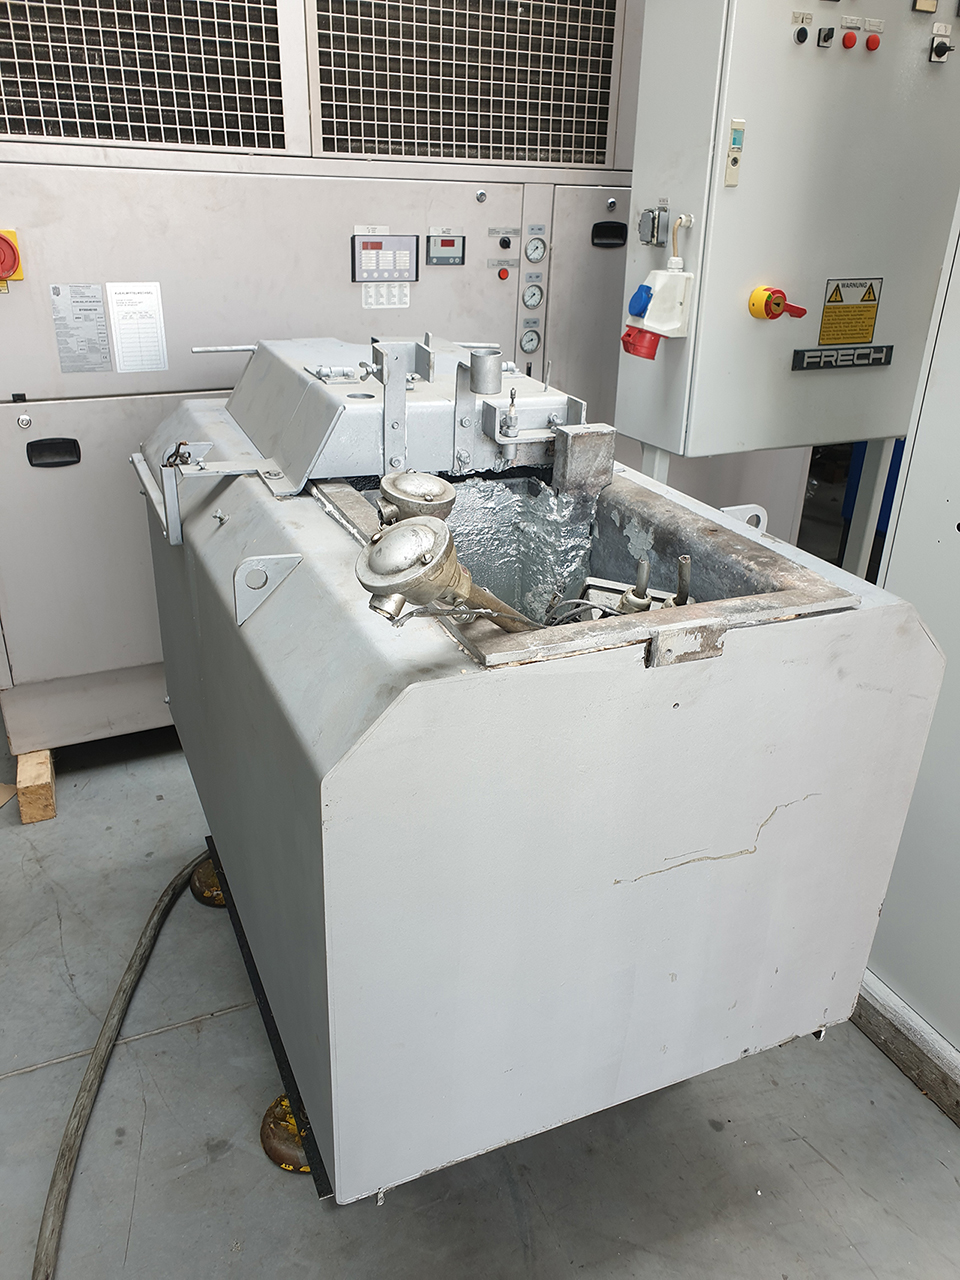 Reconditionnement de la machine de coulée sous pression à chambre chaude Frech DAW 80